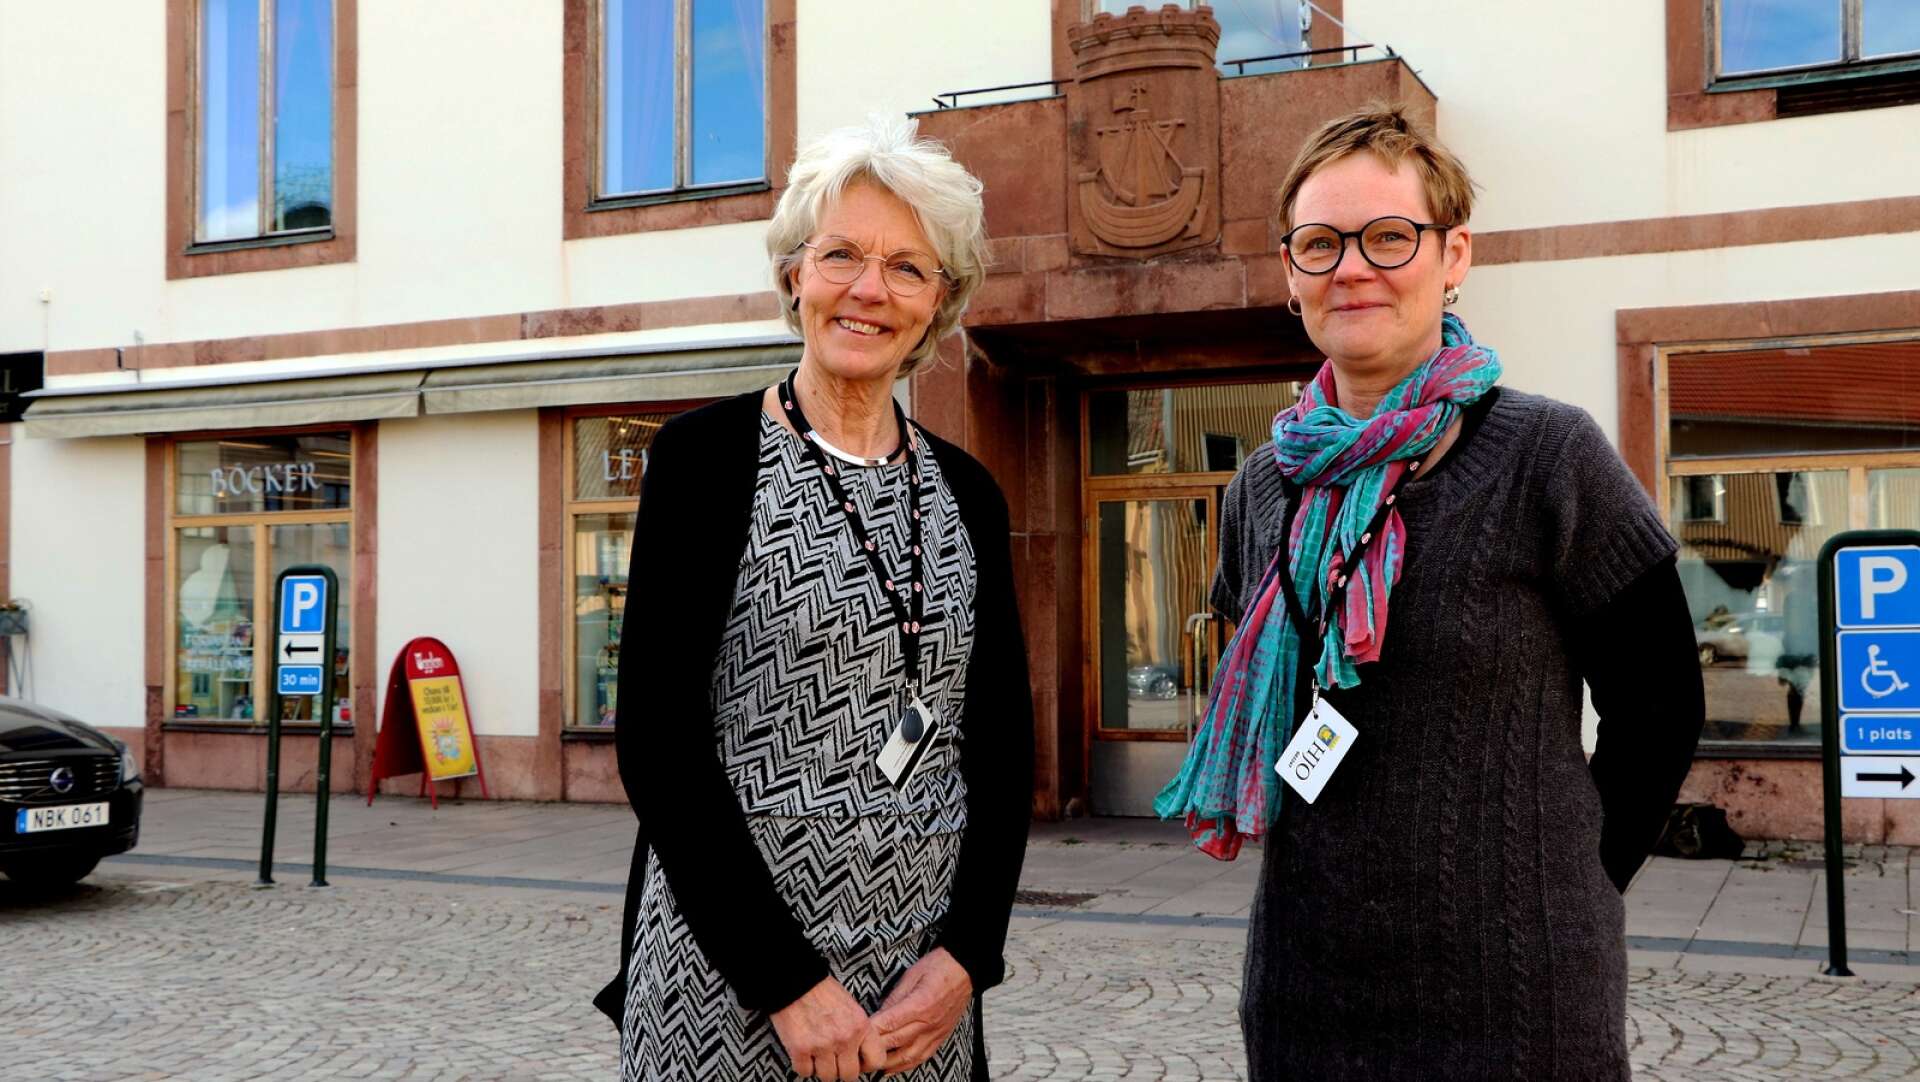 När förra kommundirektören Lisbeth Göthberg lämnade över stafettpinnen till Eva Ulfenborg var ett av hennes första uppdrag att revidera visionen. Nu finns ett förslag i bästa ”Tillsammans”-anda.